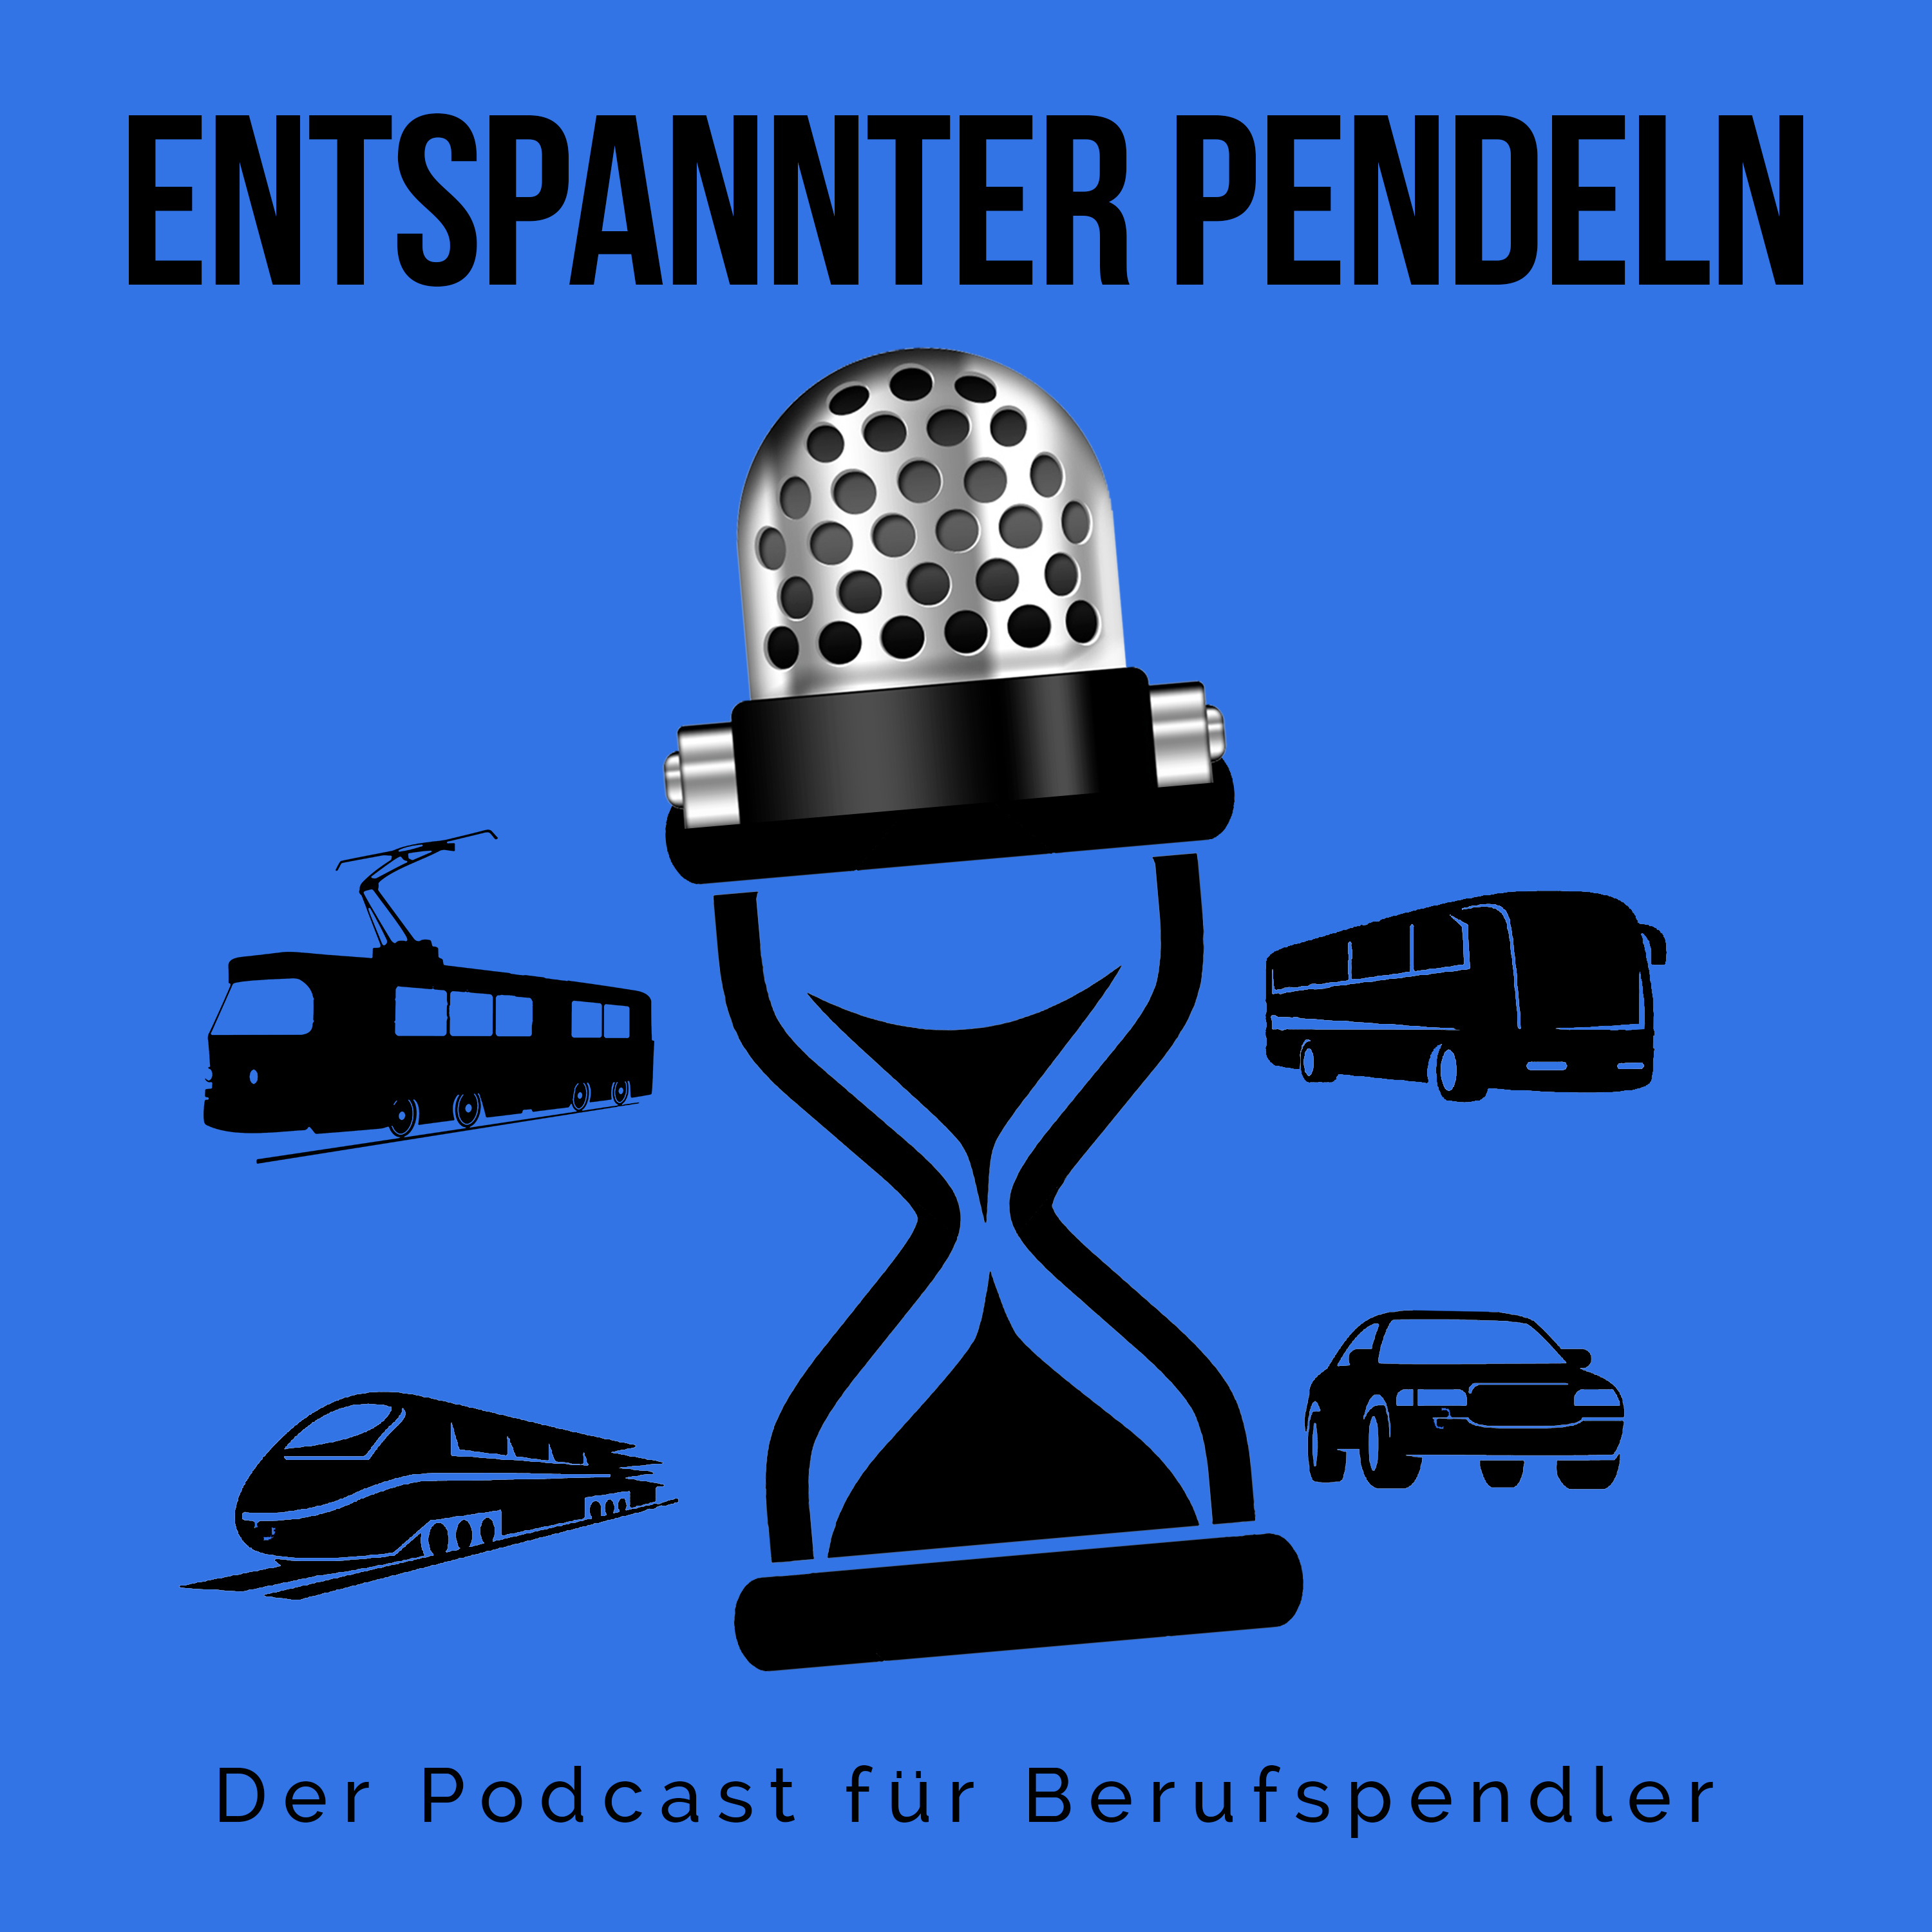 Entspannter Pendeln - Der Podcast für entspannte Berufspendler